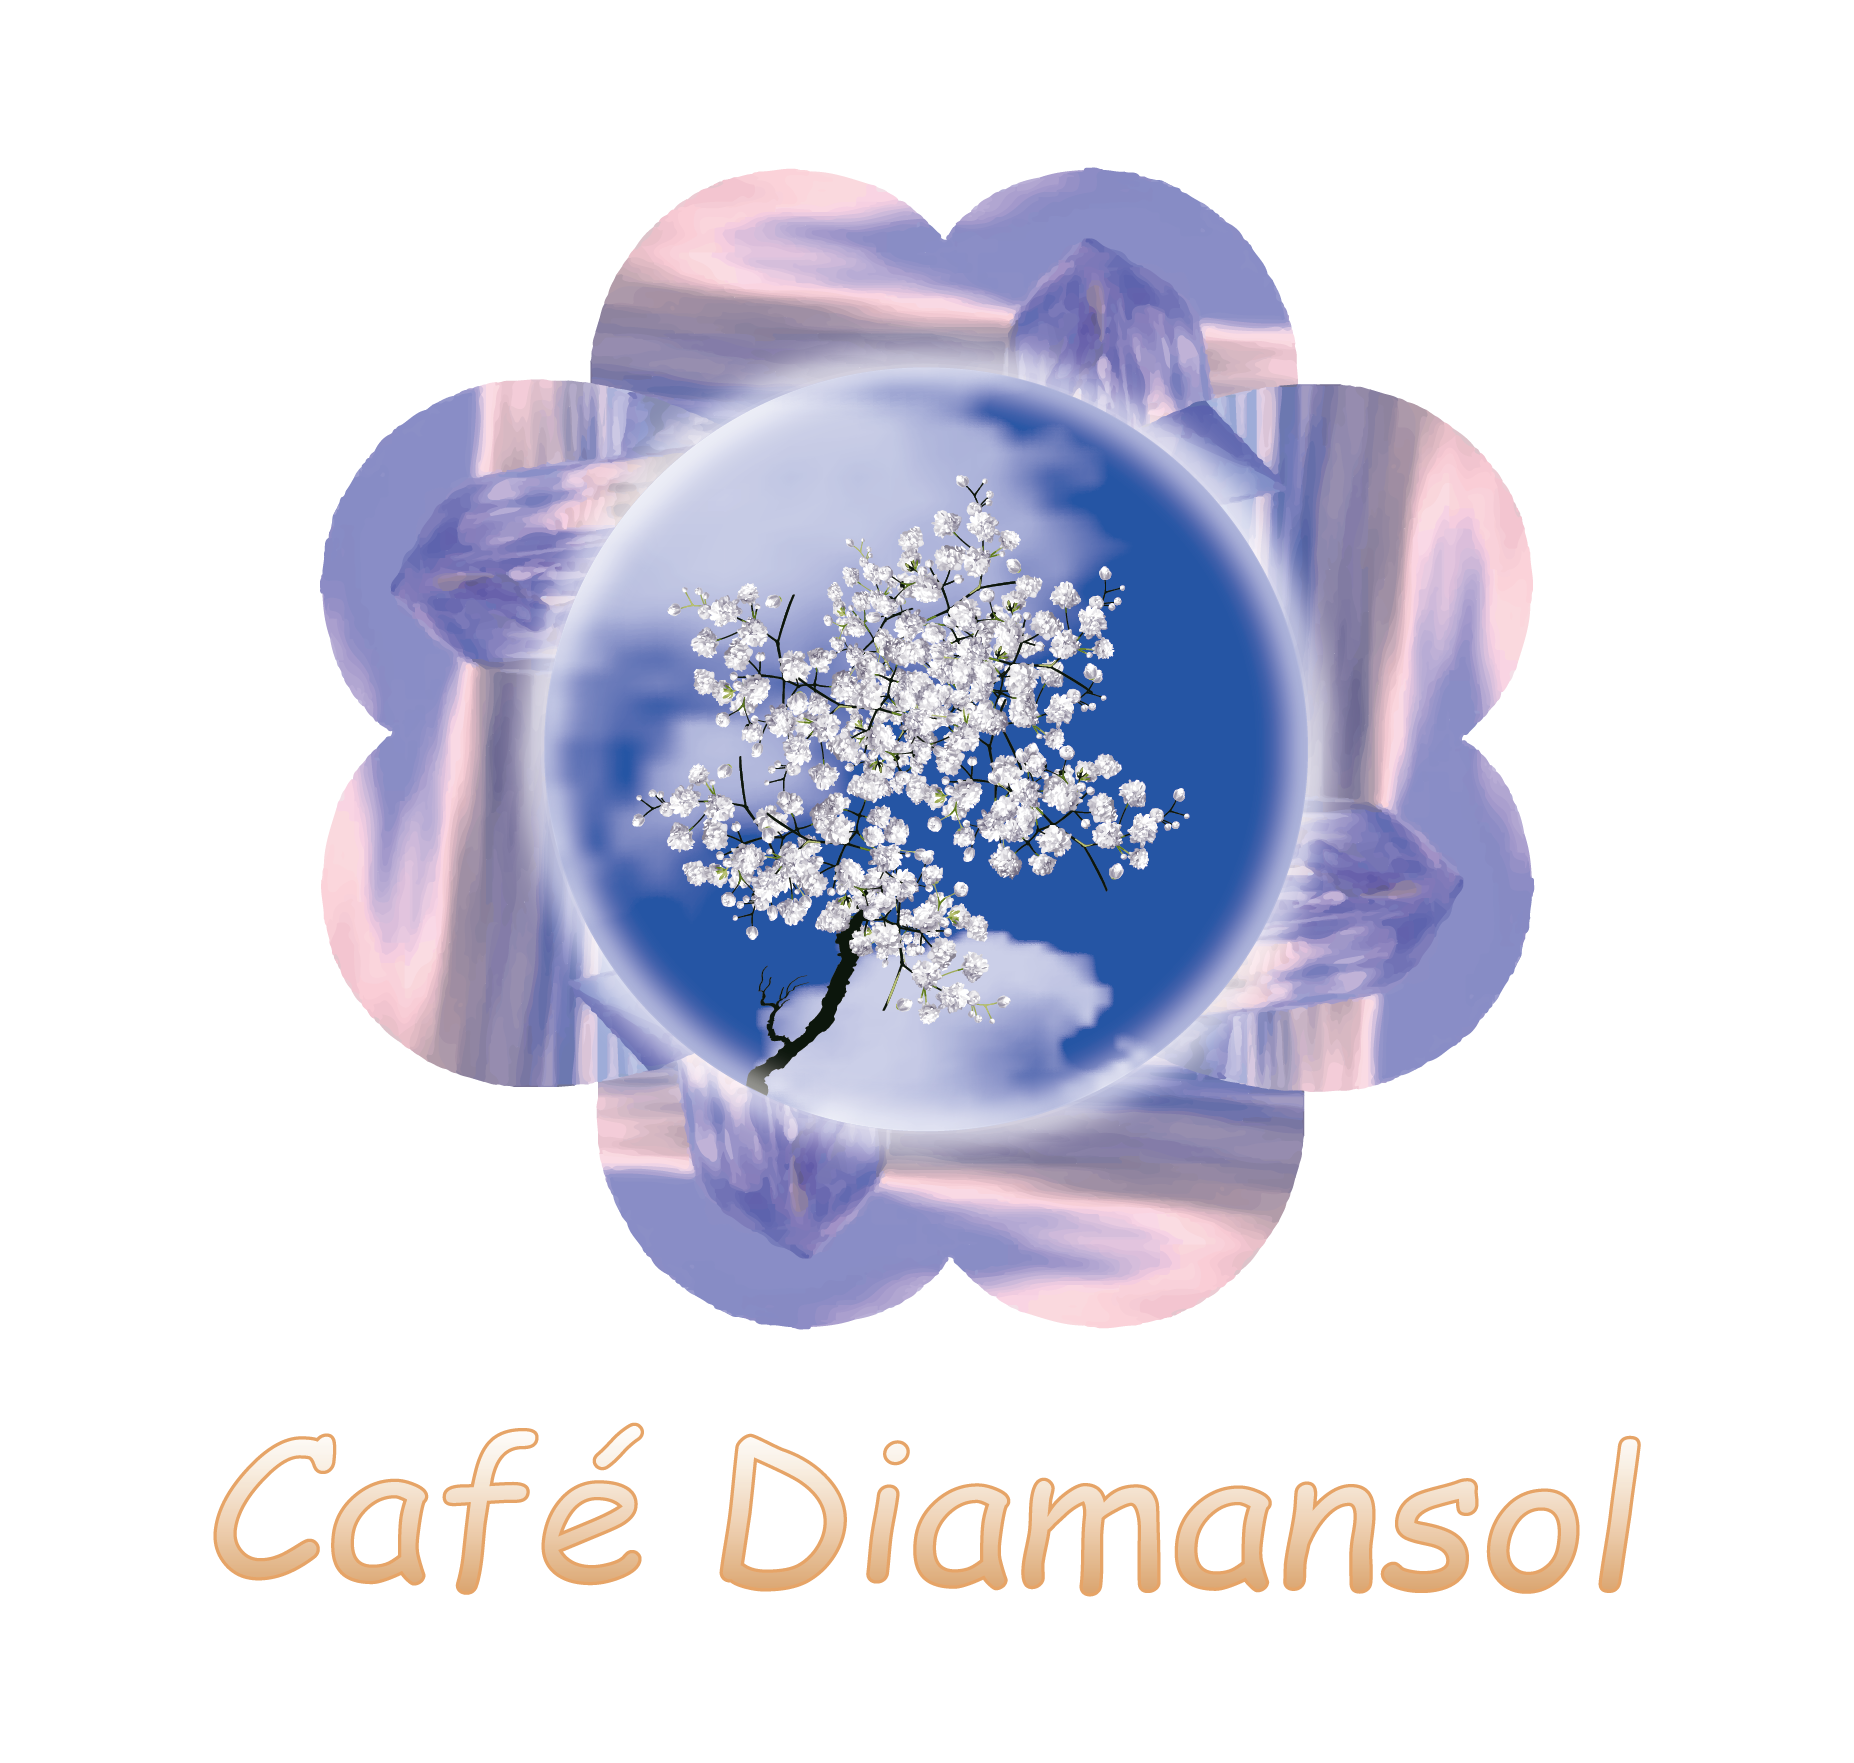 (c) Cafediamansol.com